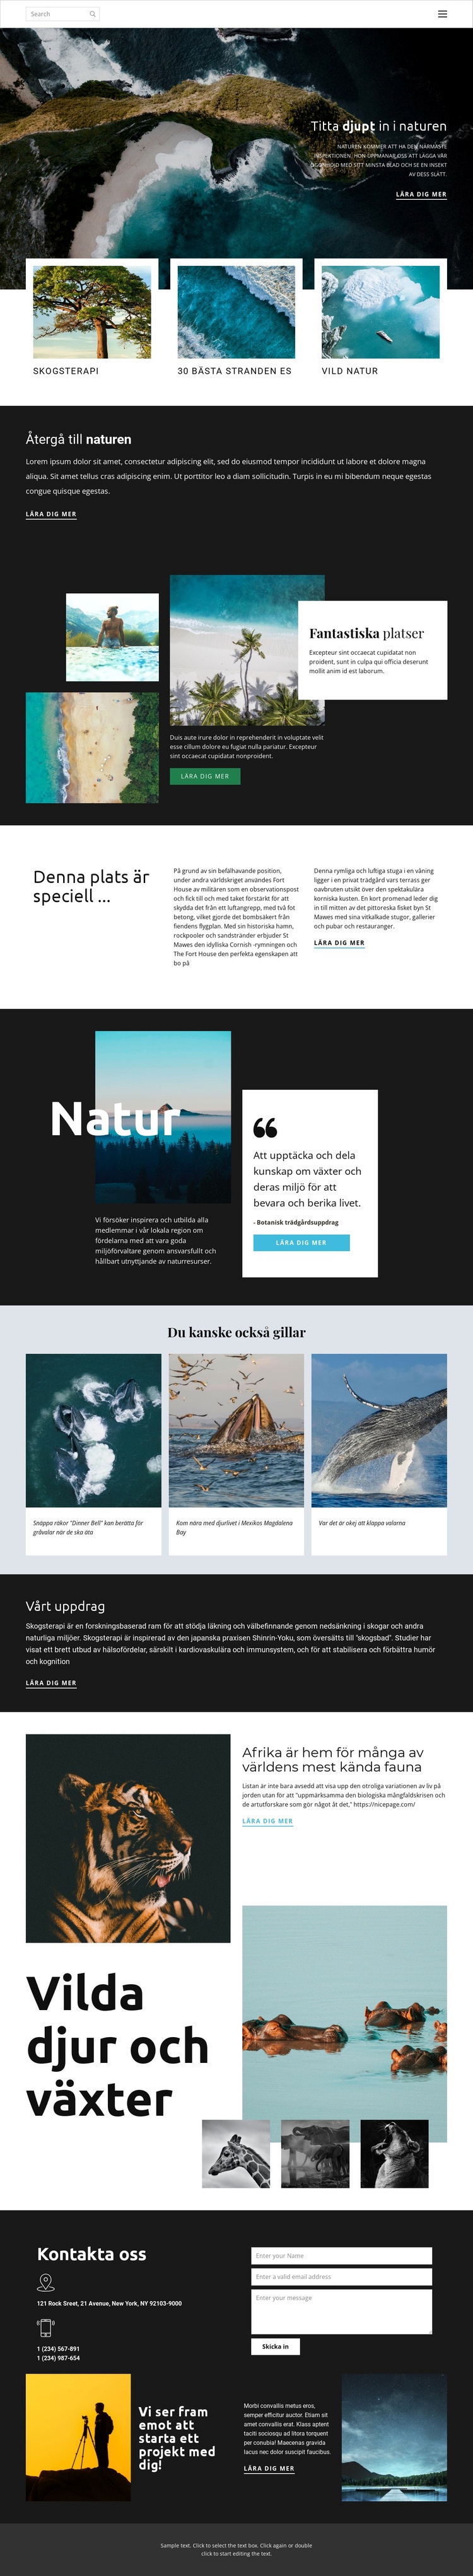 Utforska vilda djur och natur HTML-mall